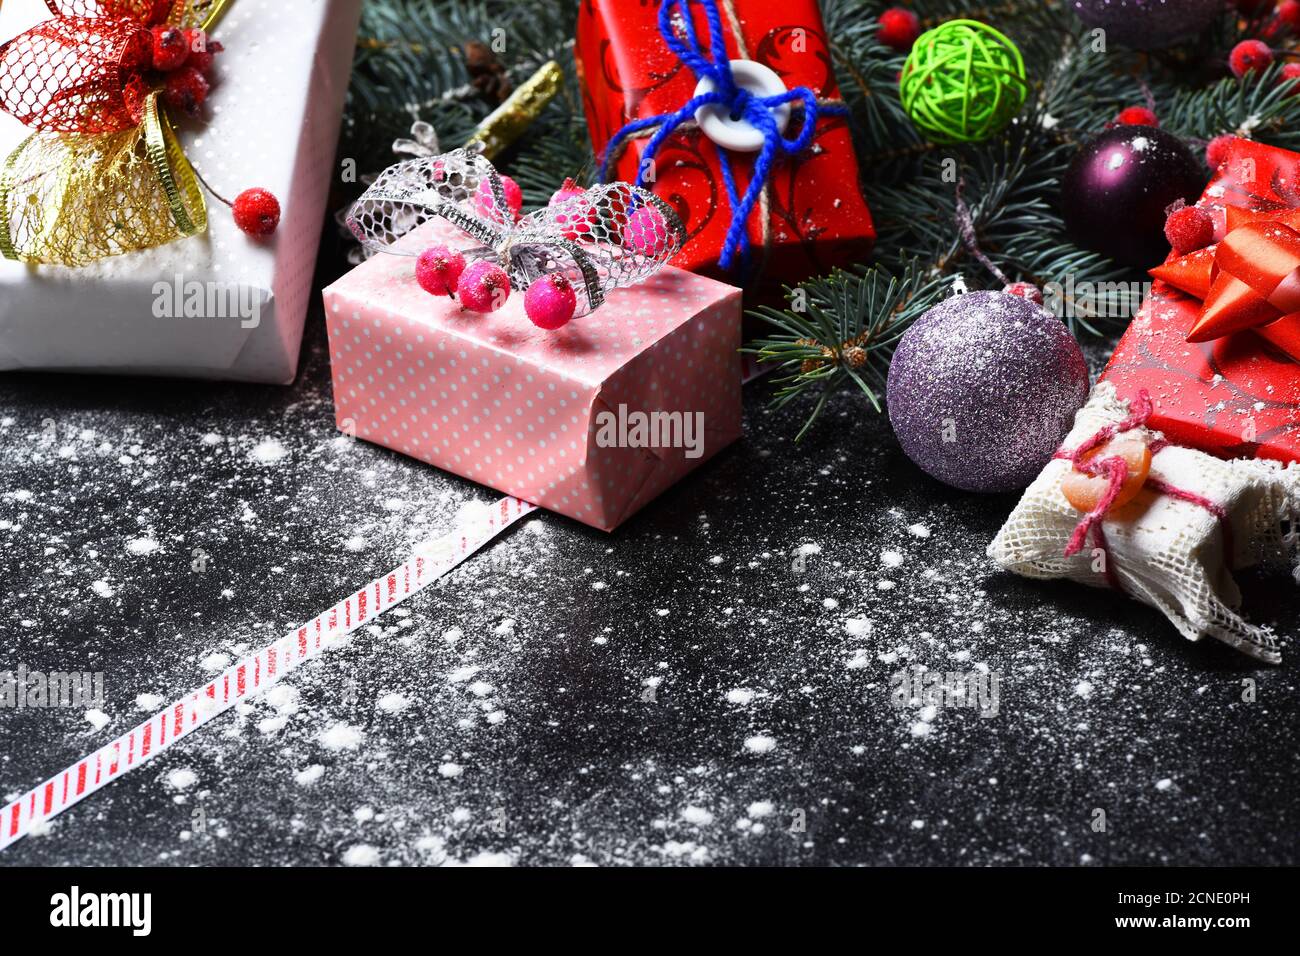 Arte di vacanza e concetto di Natale. Decorazioni natalizie su sfondo di  legno scuro con neve sparsa, copia spazio. Decorazioni realizzate in regali  rossi, rosa e bianchi. Rami di firtree con bacche